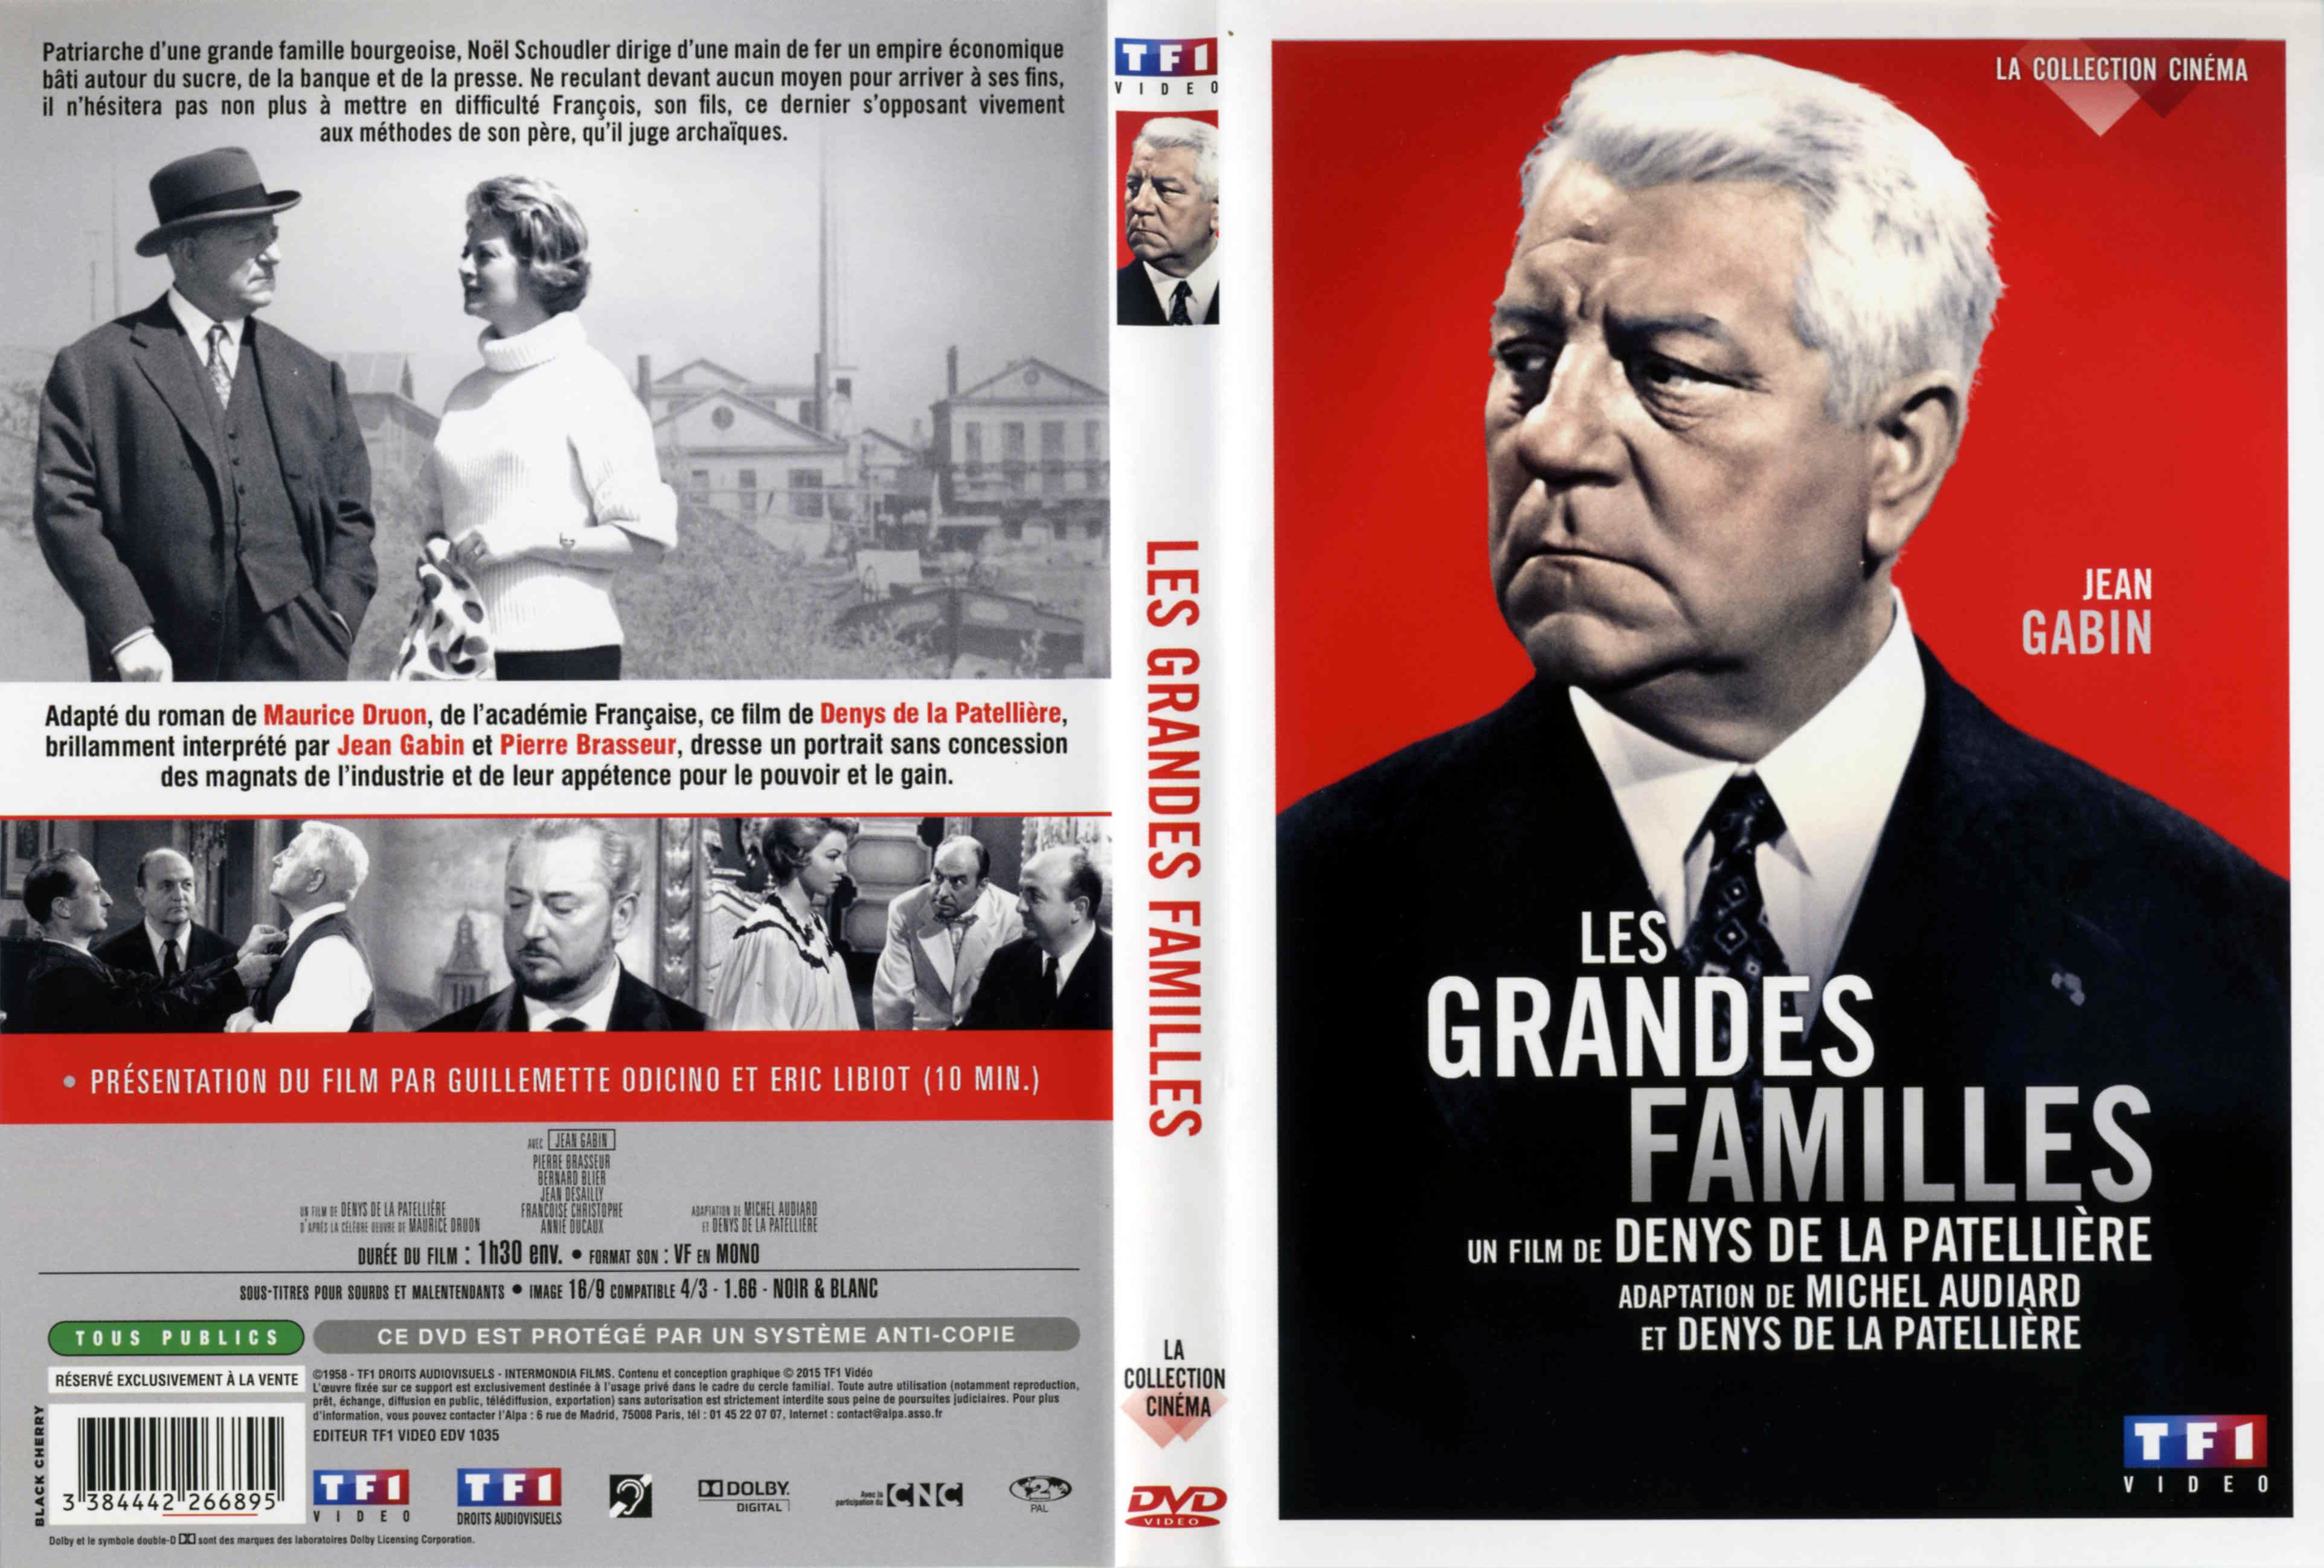 Jaquette DVD Les Grandes Familles v2